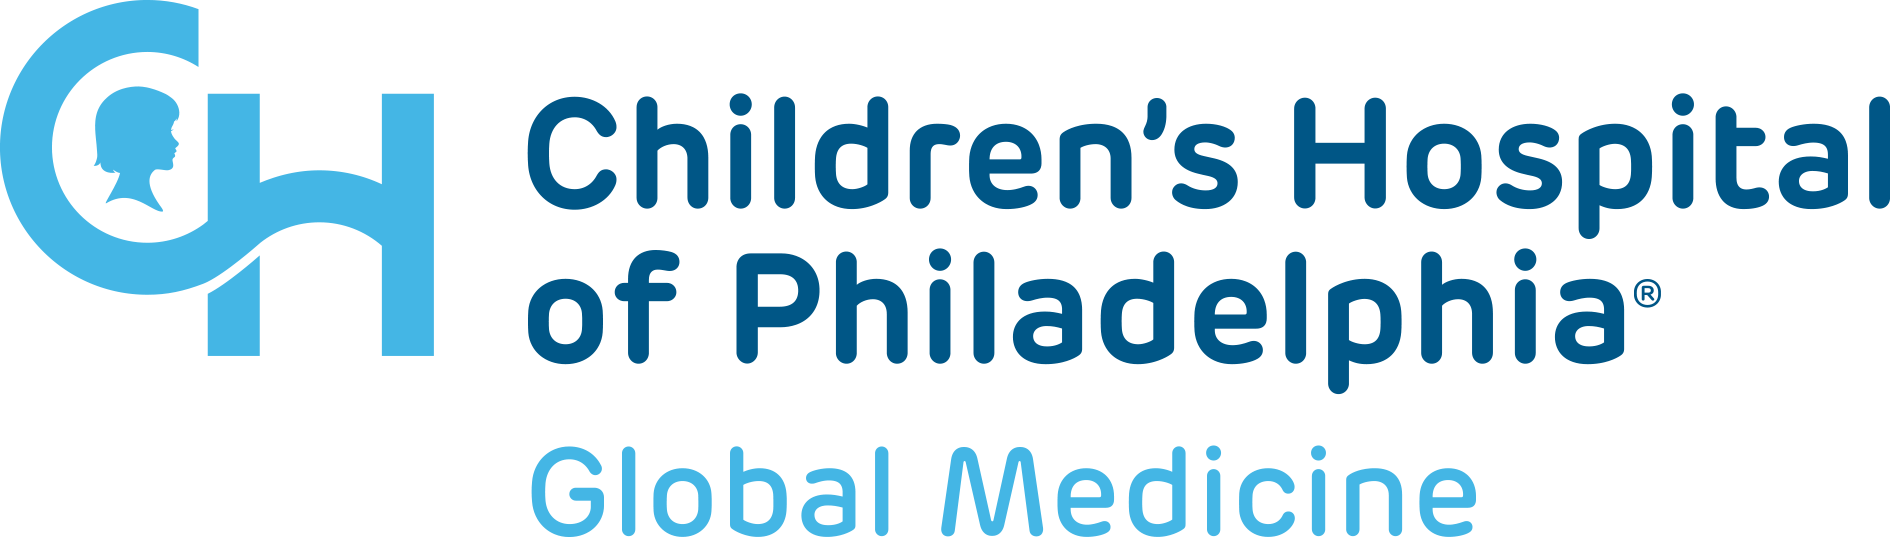 Childrens hospital of Philadelphia